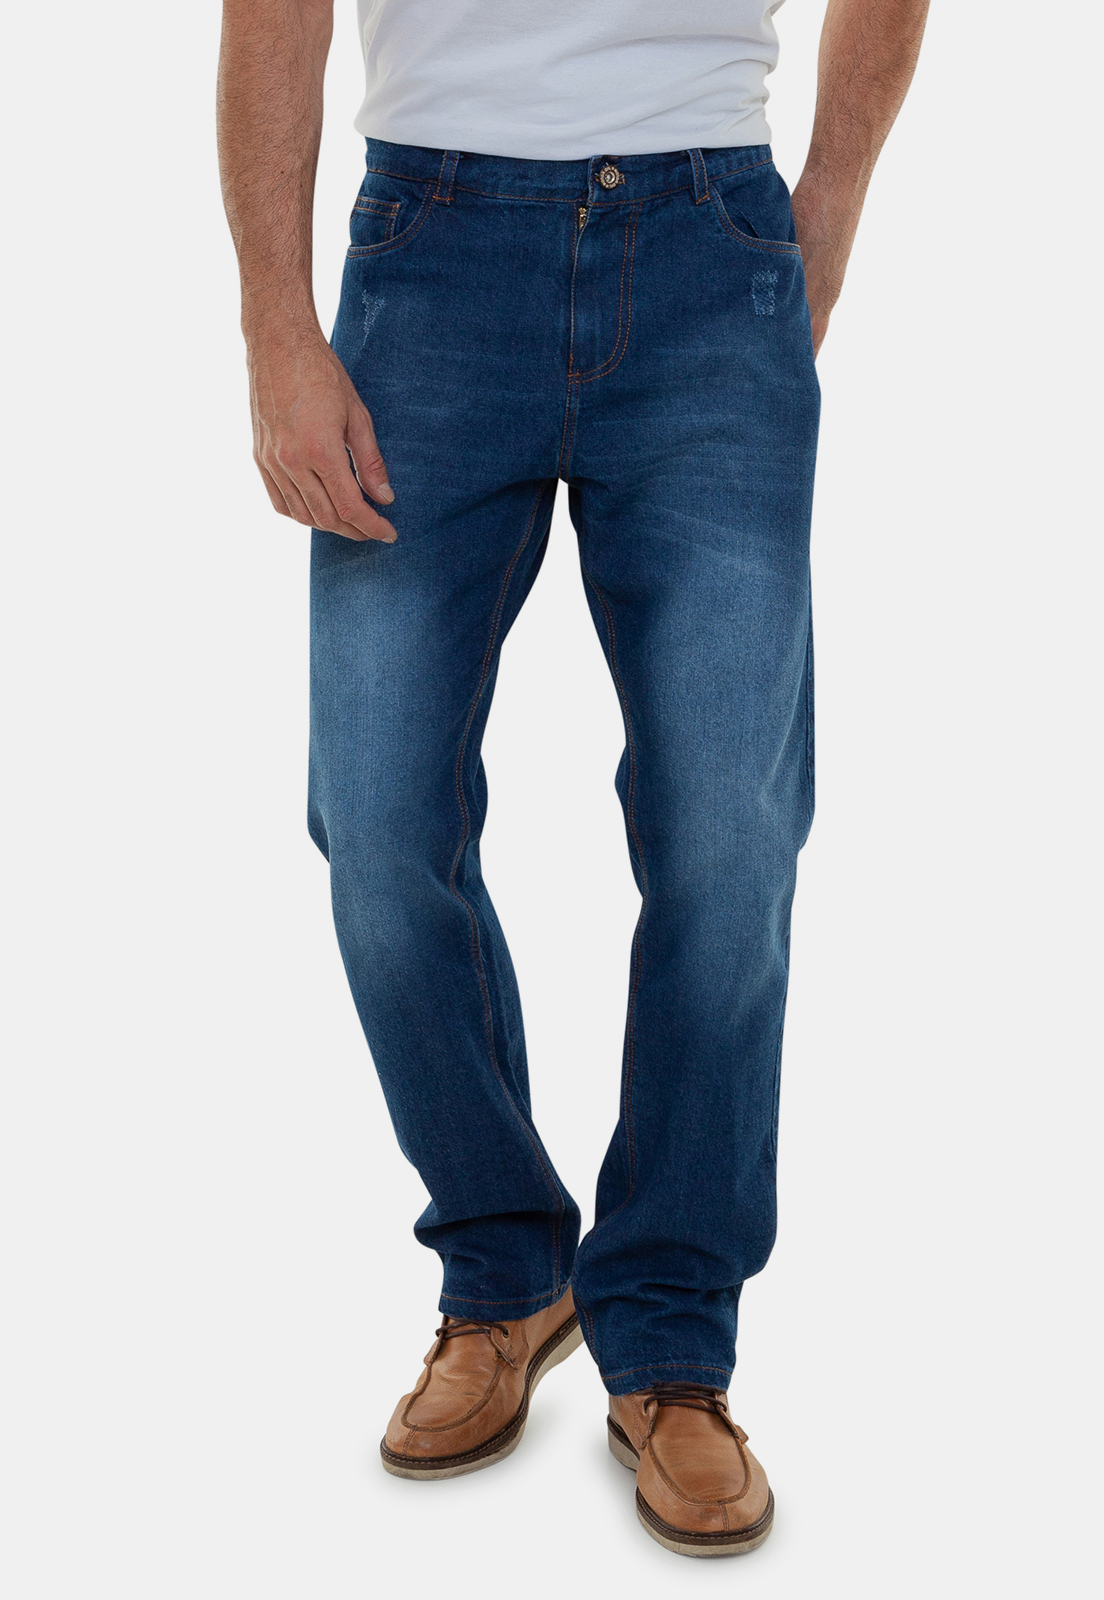 Calça Jeans Masculina Tradicional com Elastano - Etiqueta Casual